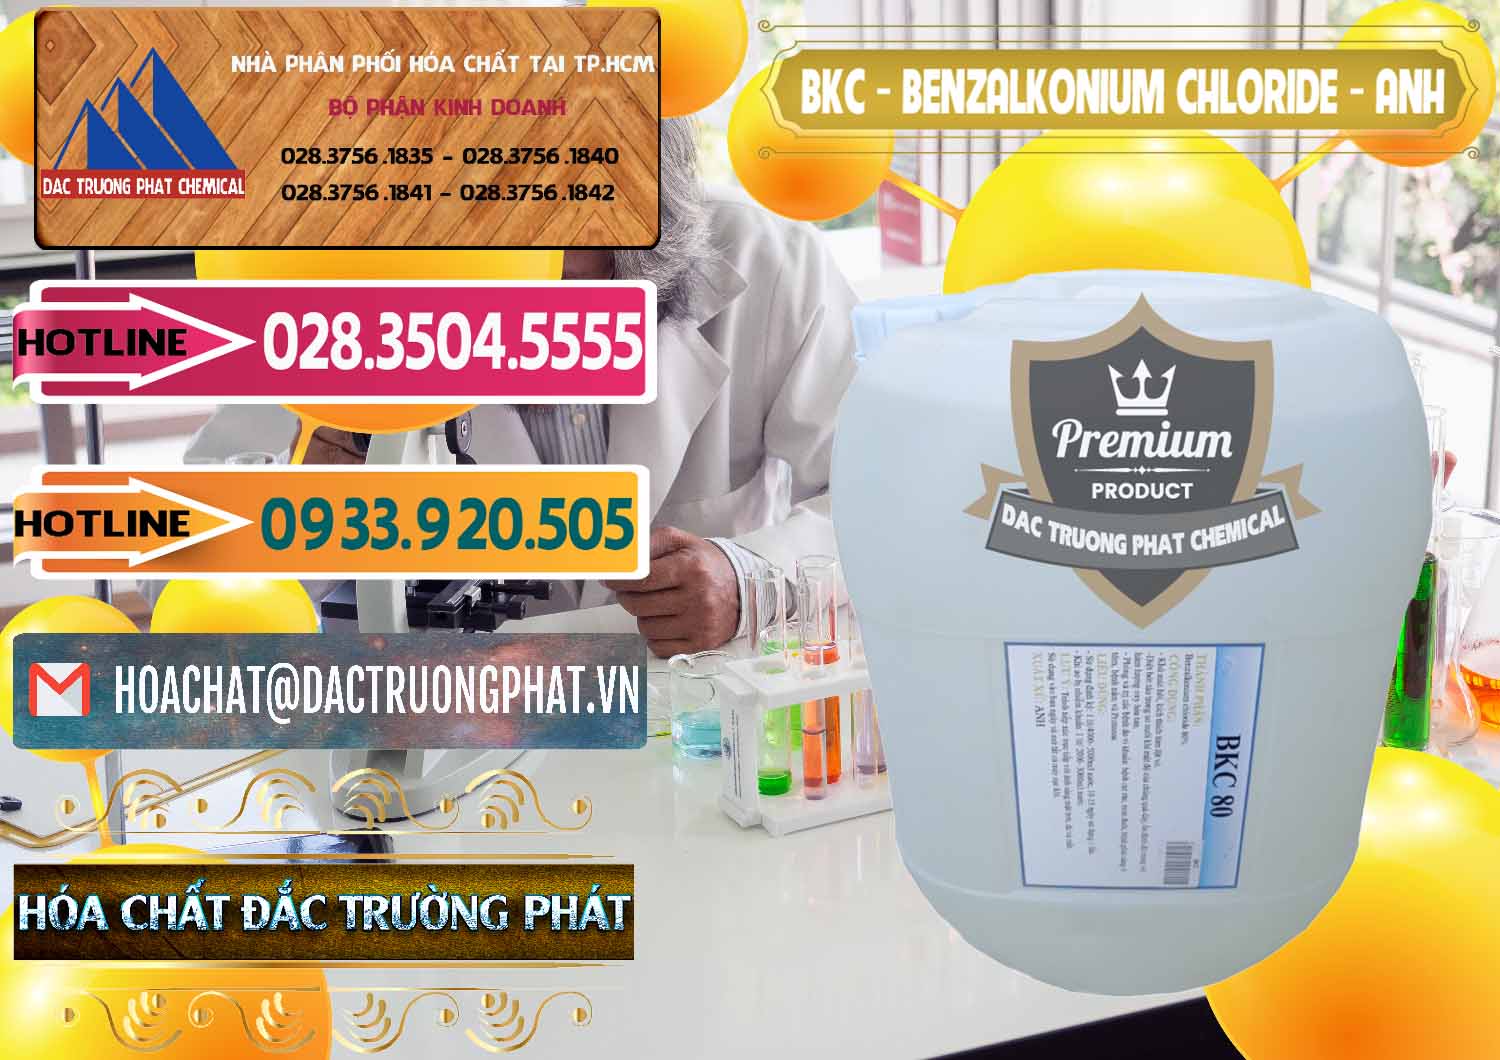 Cty chuyên cung ứng ( bán ) BKC - Benzalkonium Chloride Anh Quốc Uk Kingdoms - 0415 - Công ty chuyên kinh doanh và phân phối hóa chất tại TP.HCM - dactruongphat.vn